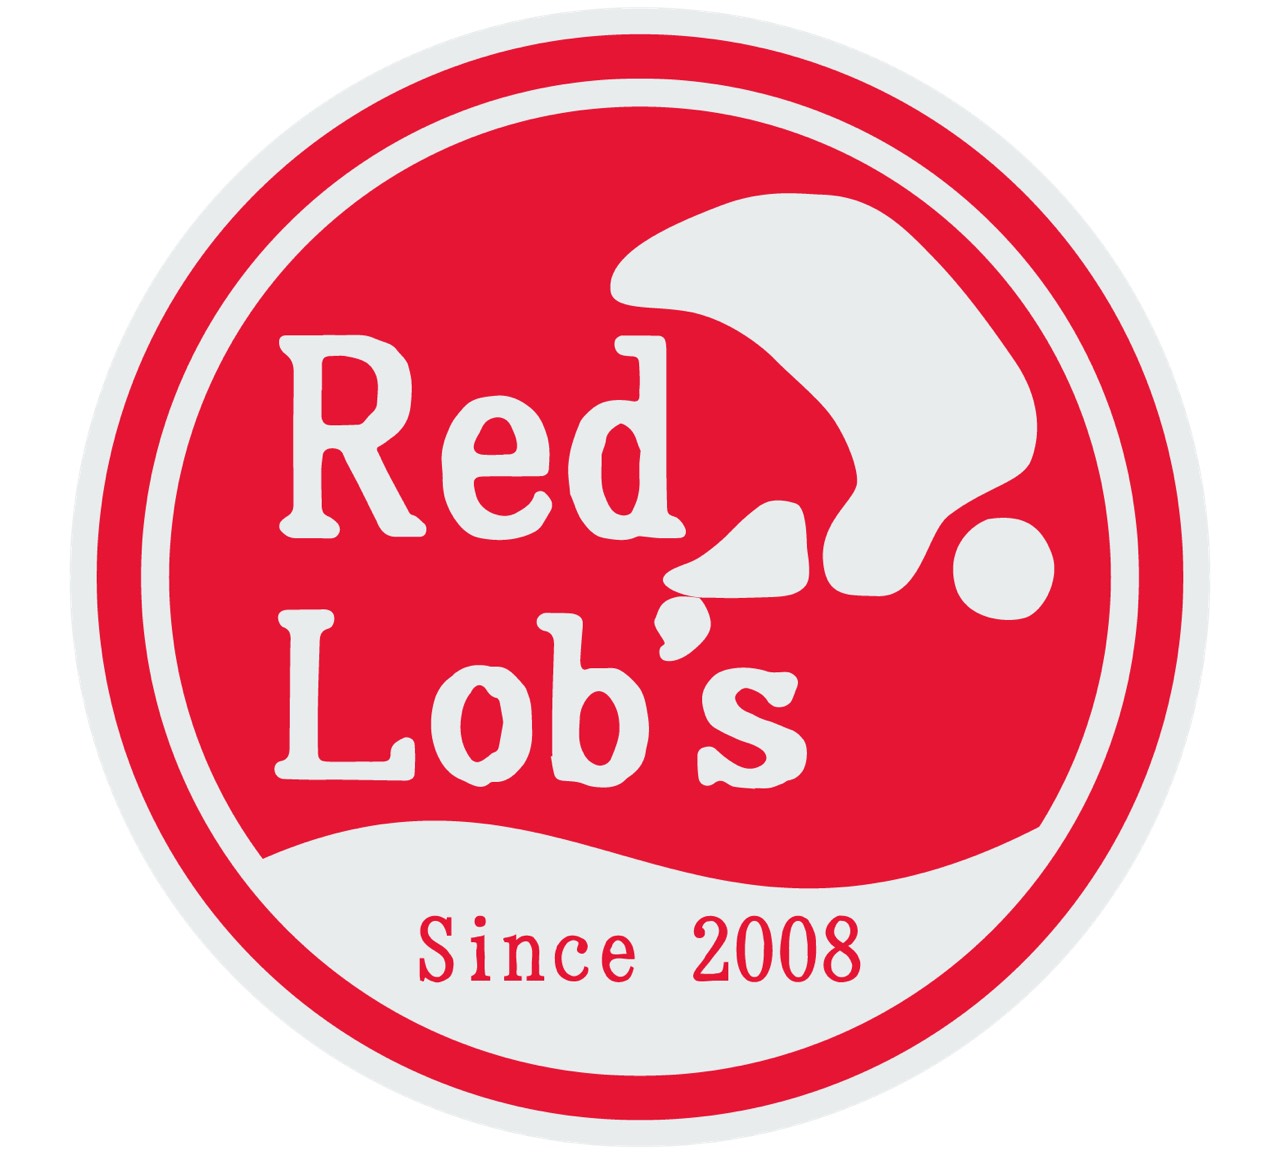 横濱RedLob's